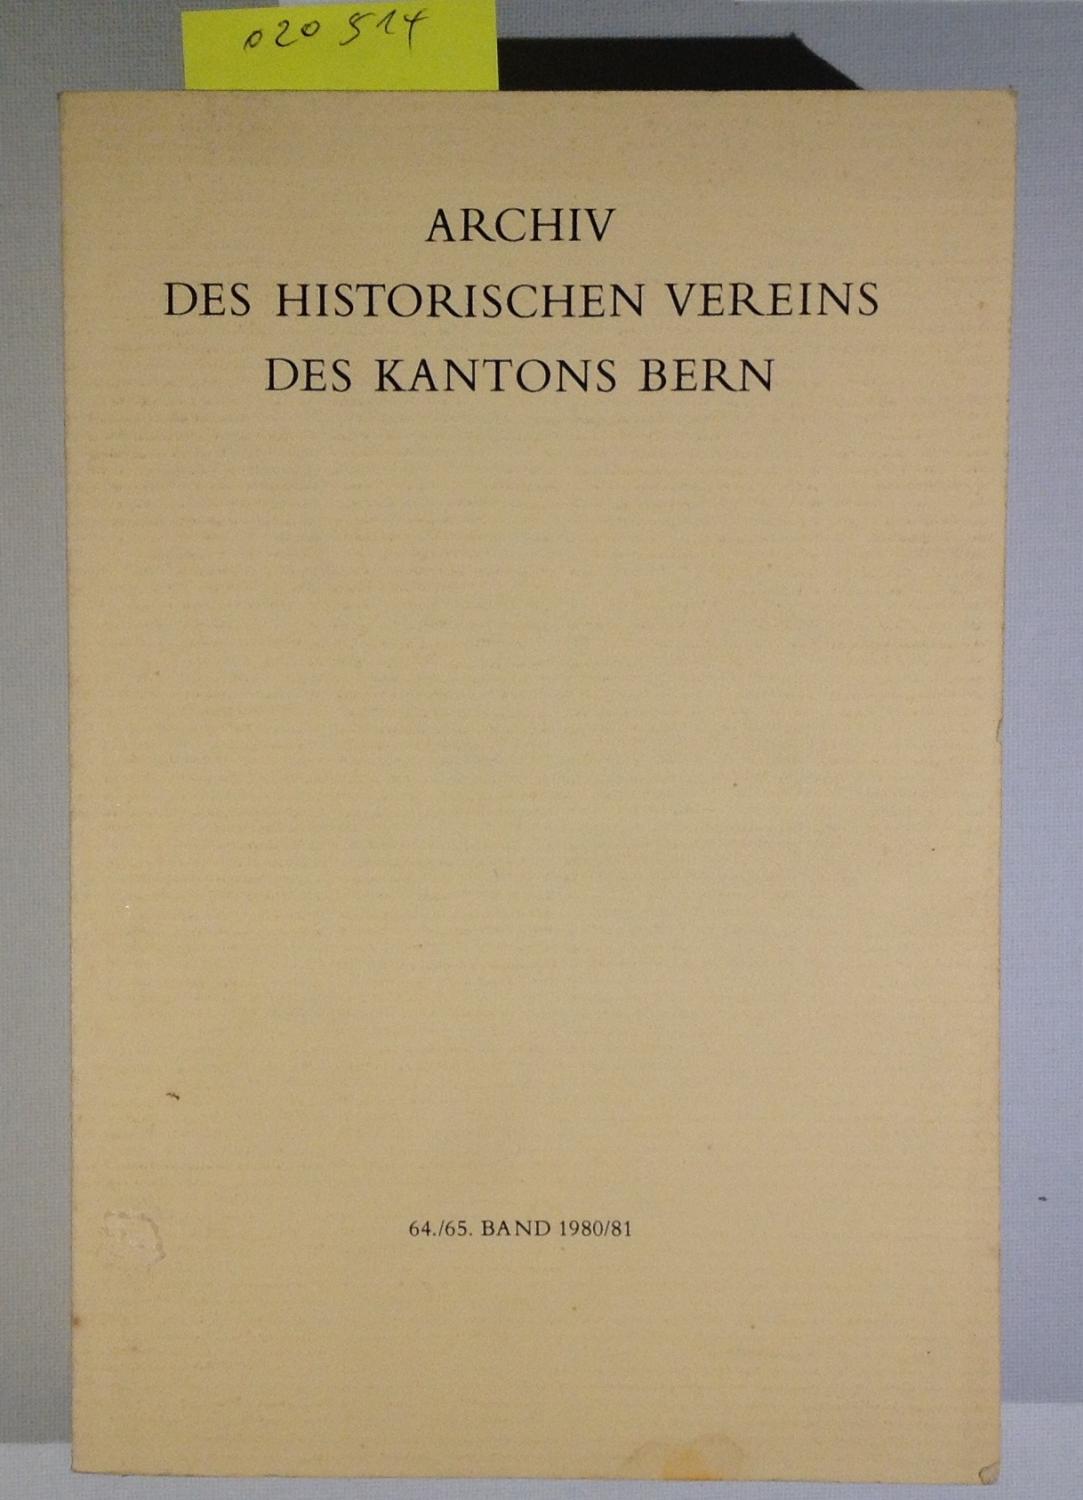 450 Jahre Berner Reformation: Beiträge zur Geschichte der Berner Reformation und zu Niklaus Manuel (Archiv des Historischen Vereins des Kantons Bern)